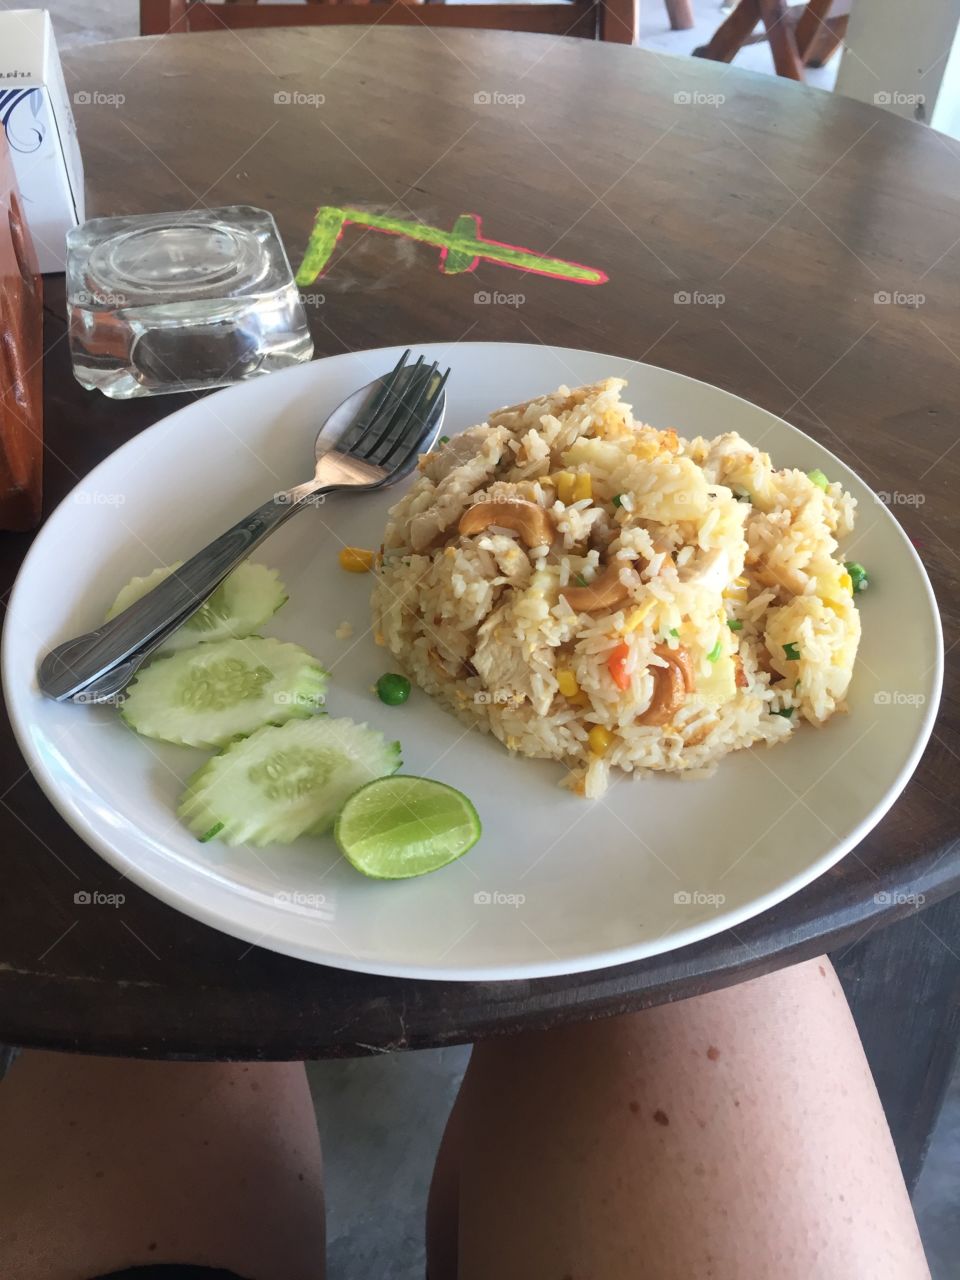 50thb Thai menu, can’t go wrong!